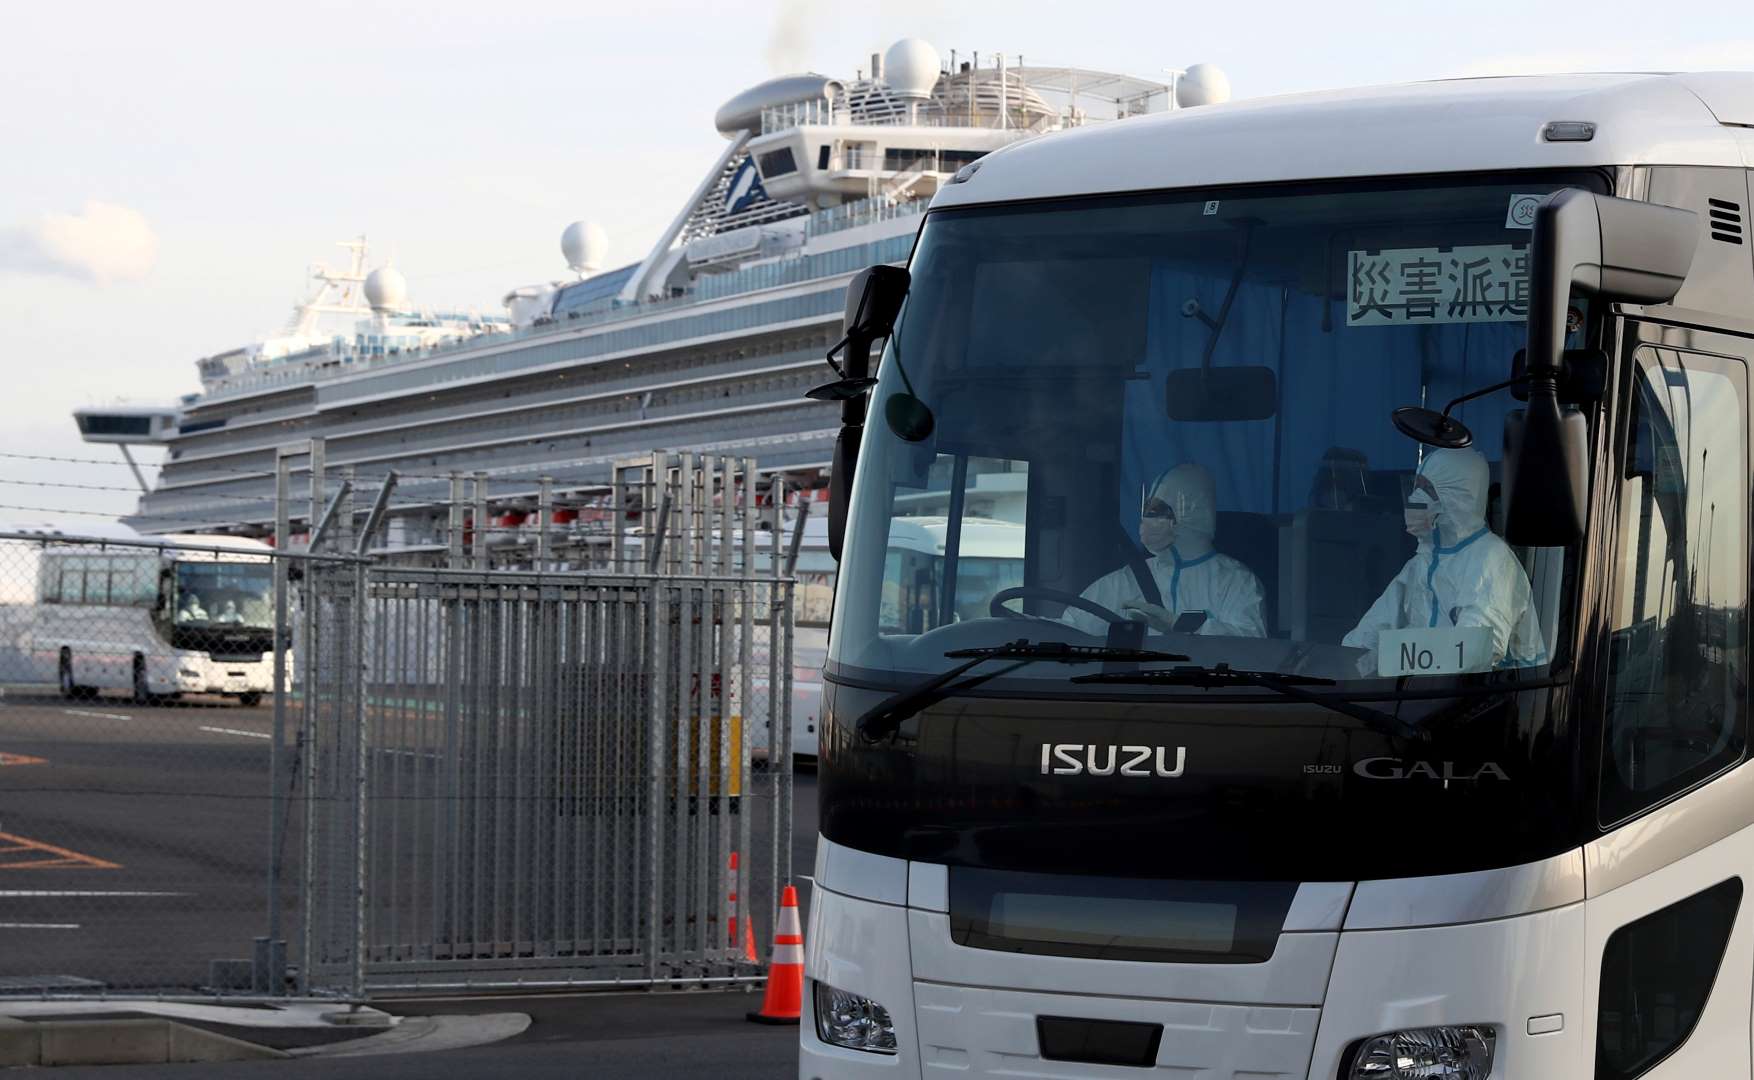 Xe bus chở các hành khách bị cách ly trên du thuyền Diamond Princess tại Yokohama, Nhật Bản (Ảnh: Reuters)